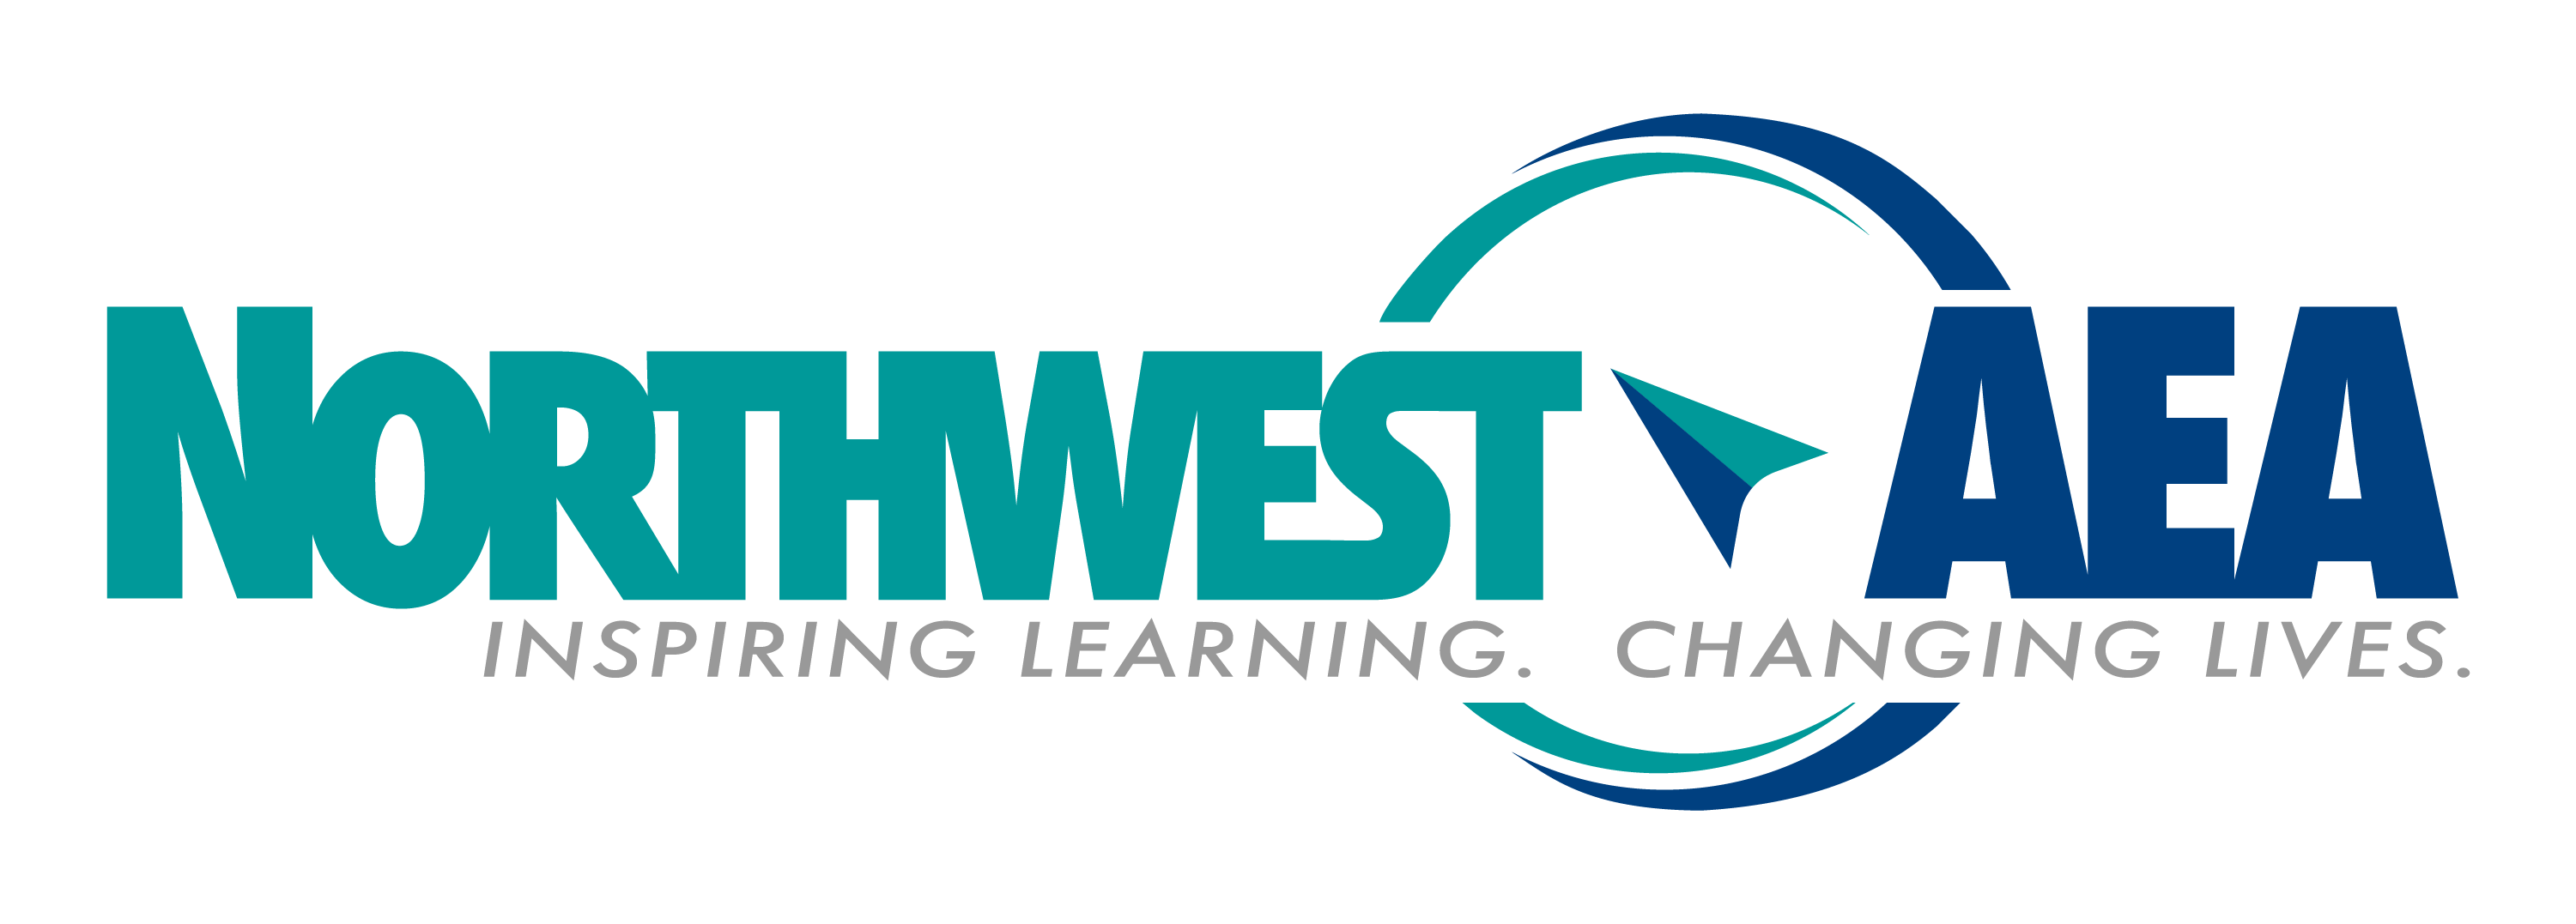 AEA Learning Online - Northwest AEANorthwest AEA